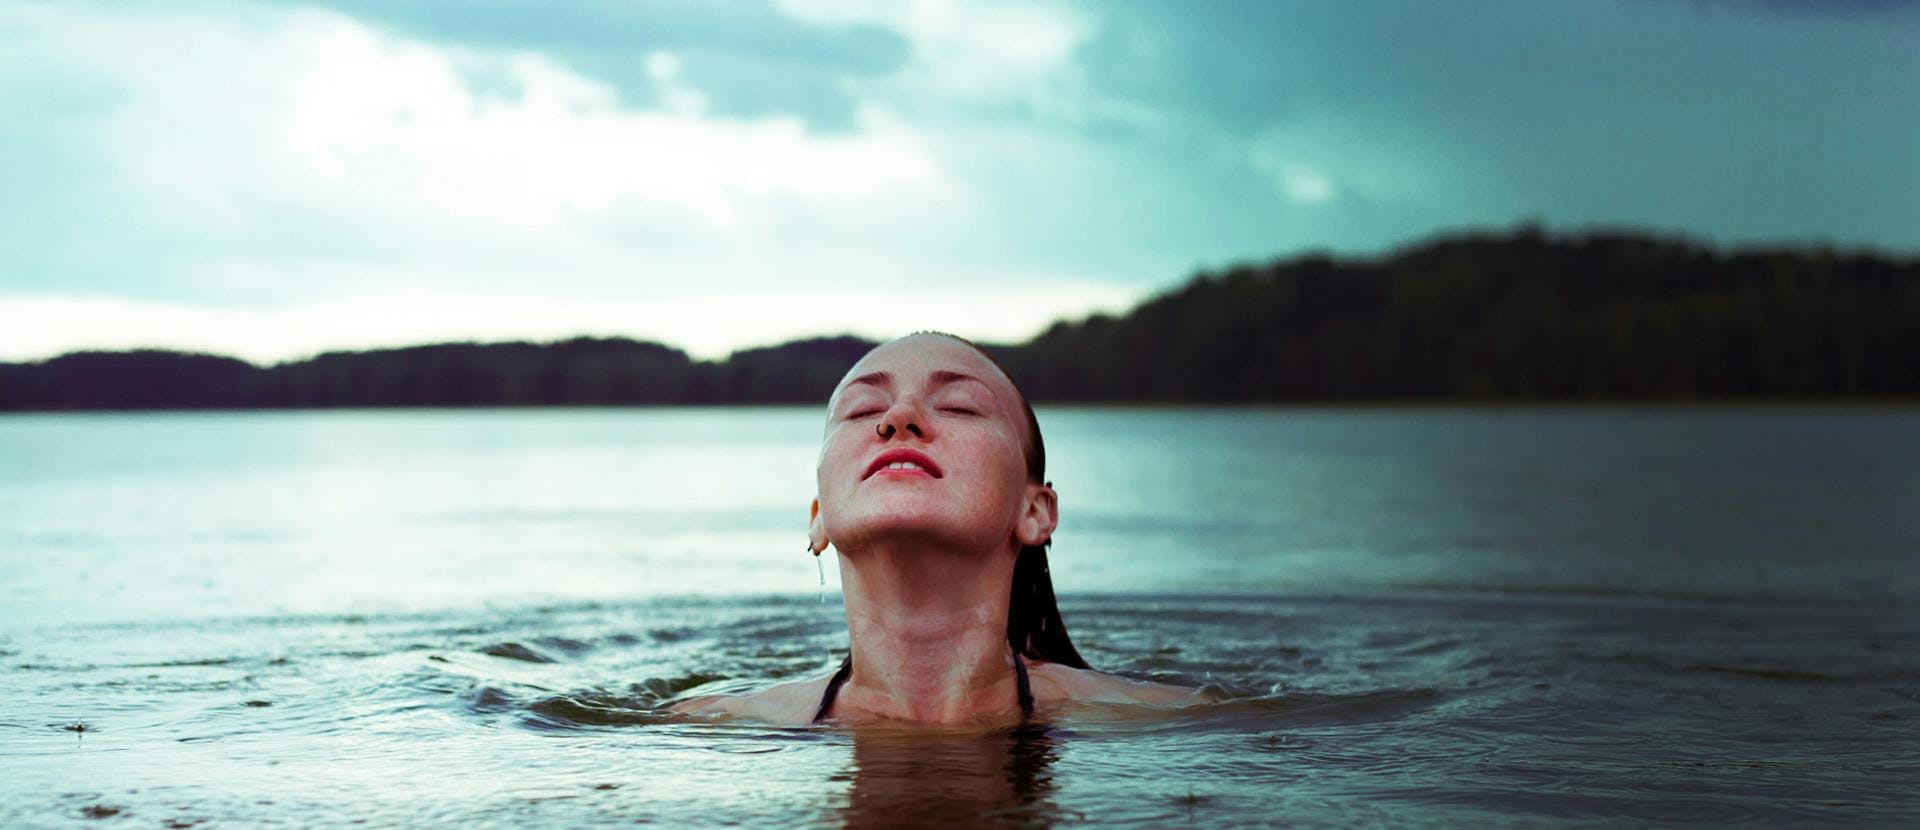 Immagine di donna in un lago che racconta come combattere la cellulite con lo sport